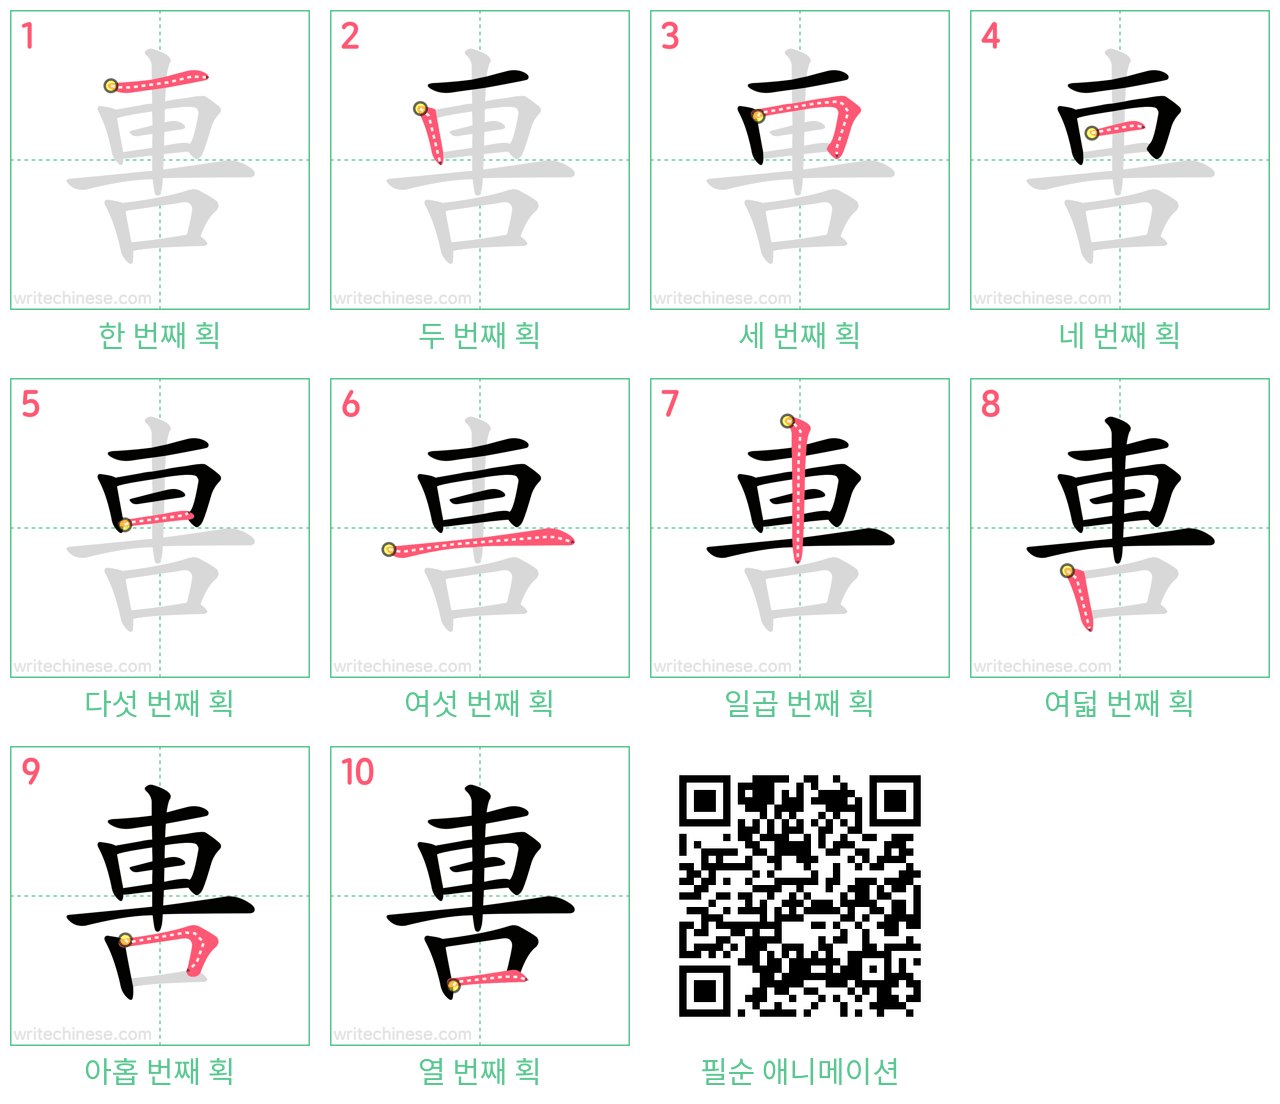 軎 step-by-step stroke order diagrams